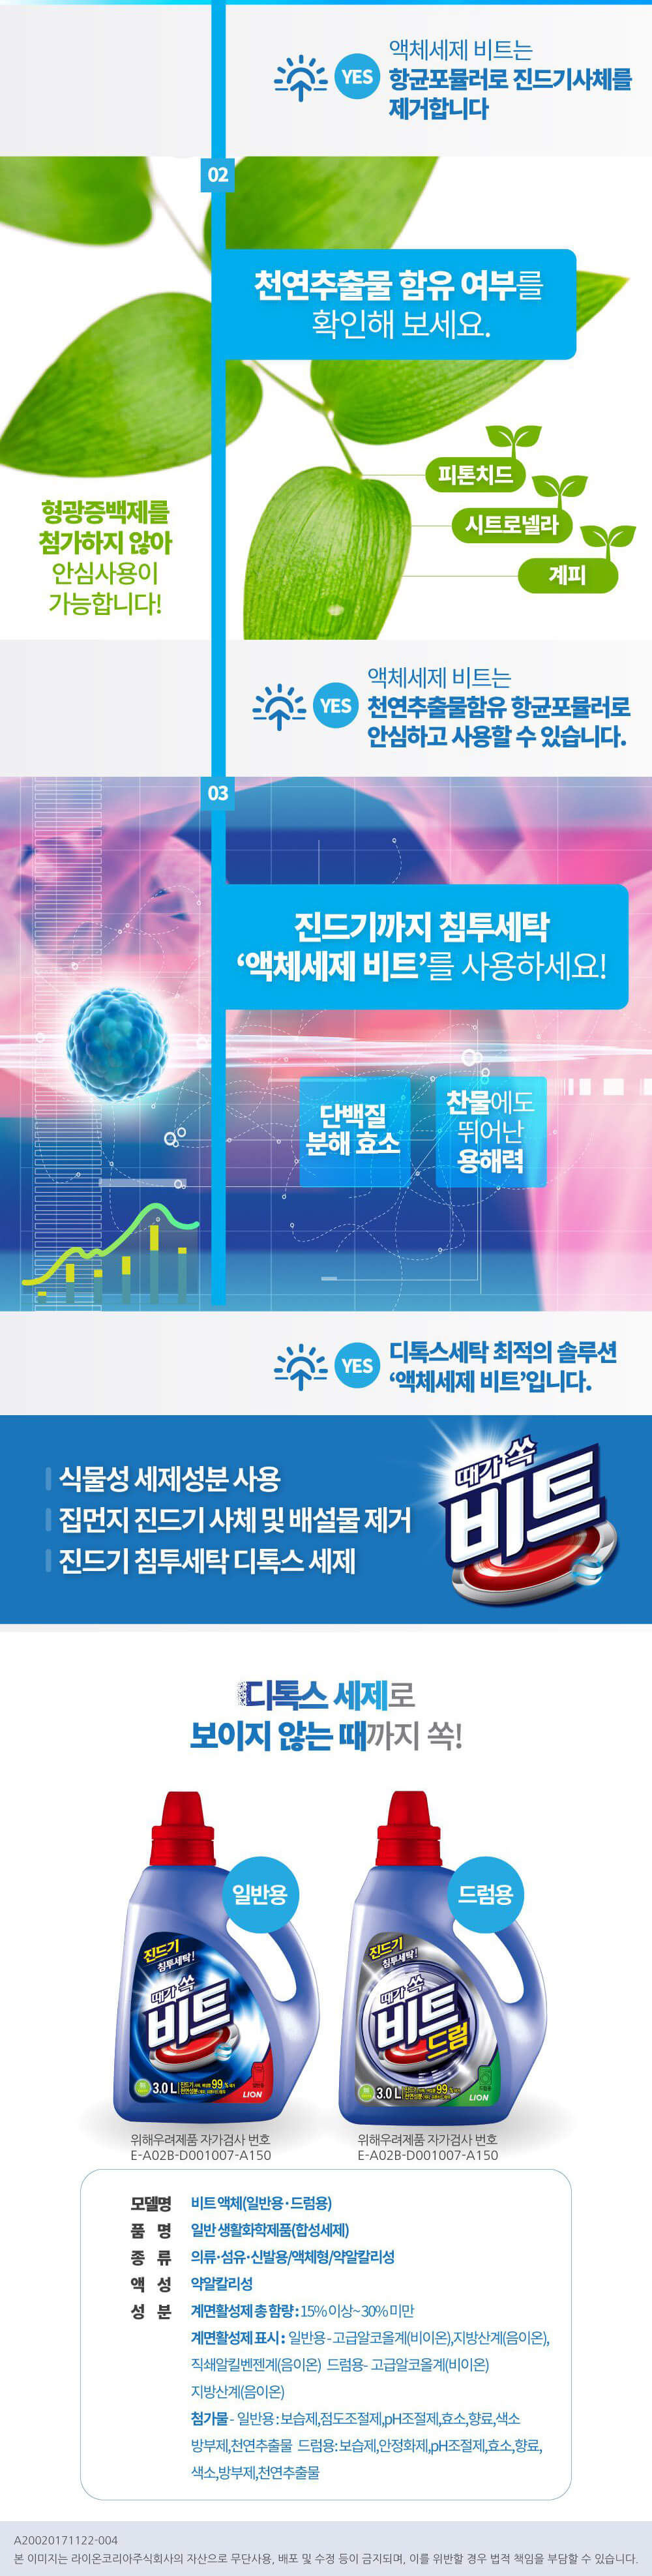 韓國食品-[엘지생활건강] 비트 액체진드기(일반) 2.4L